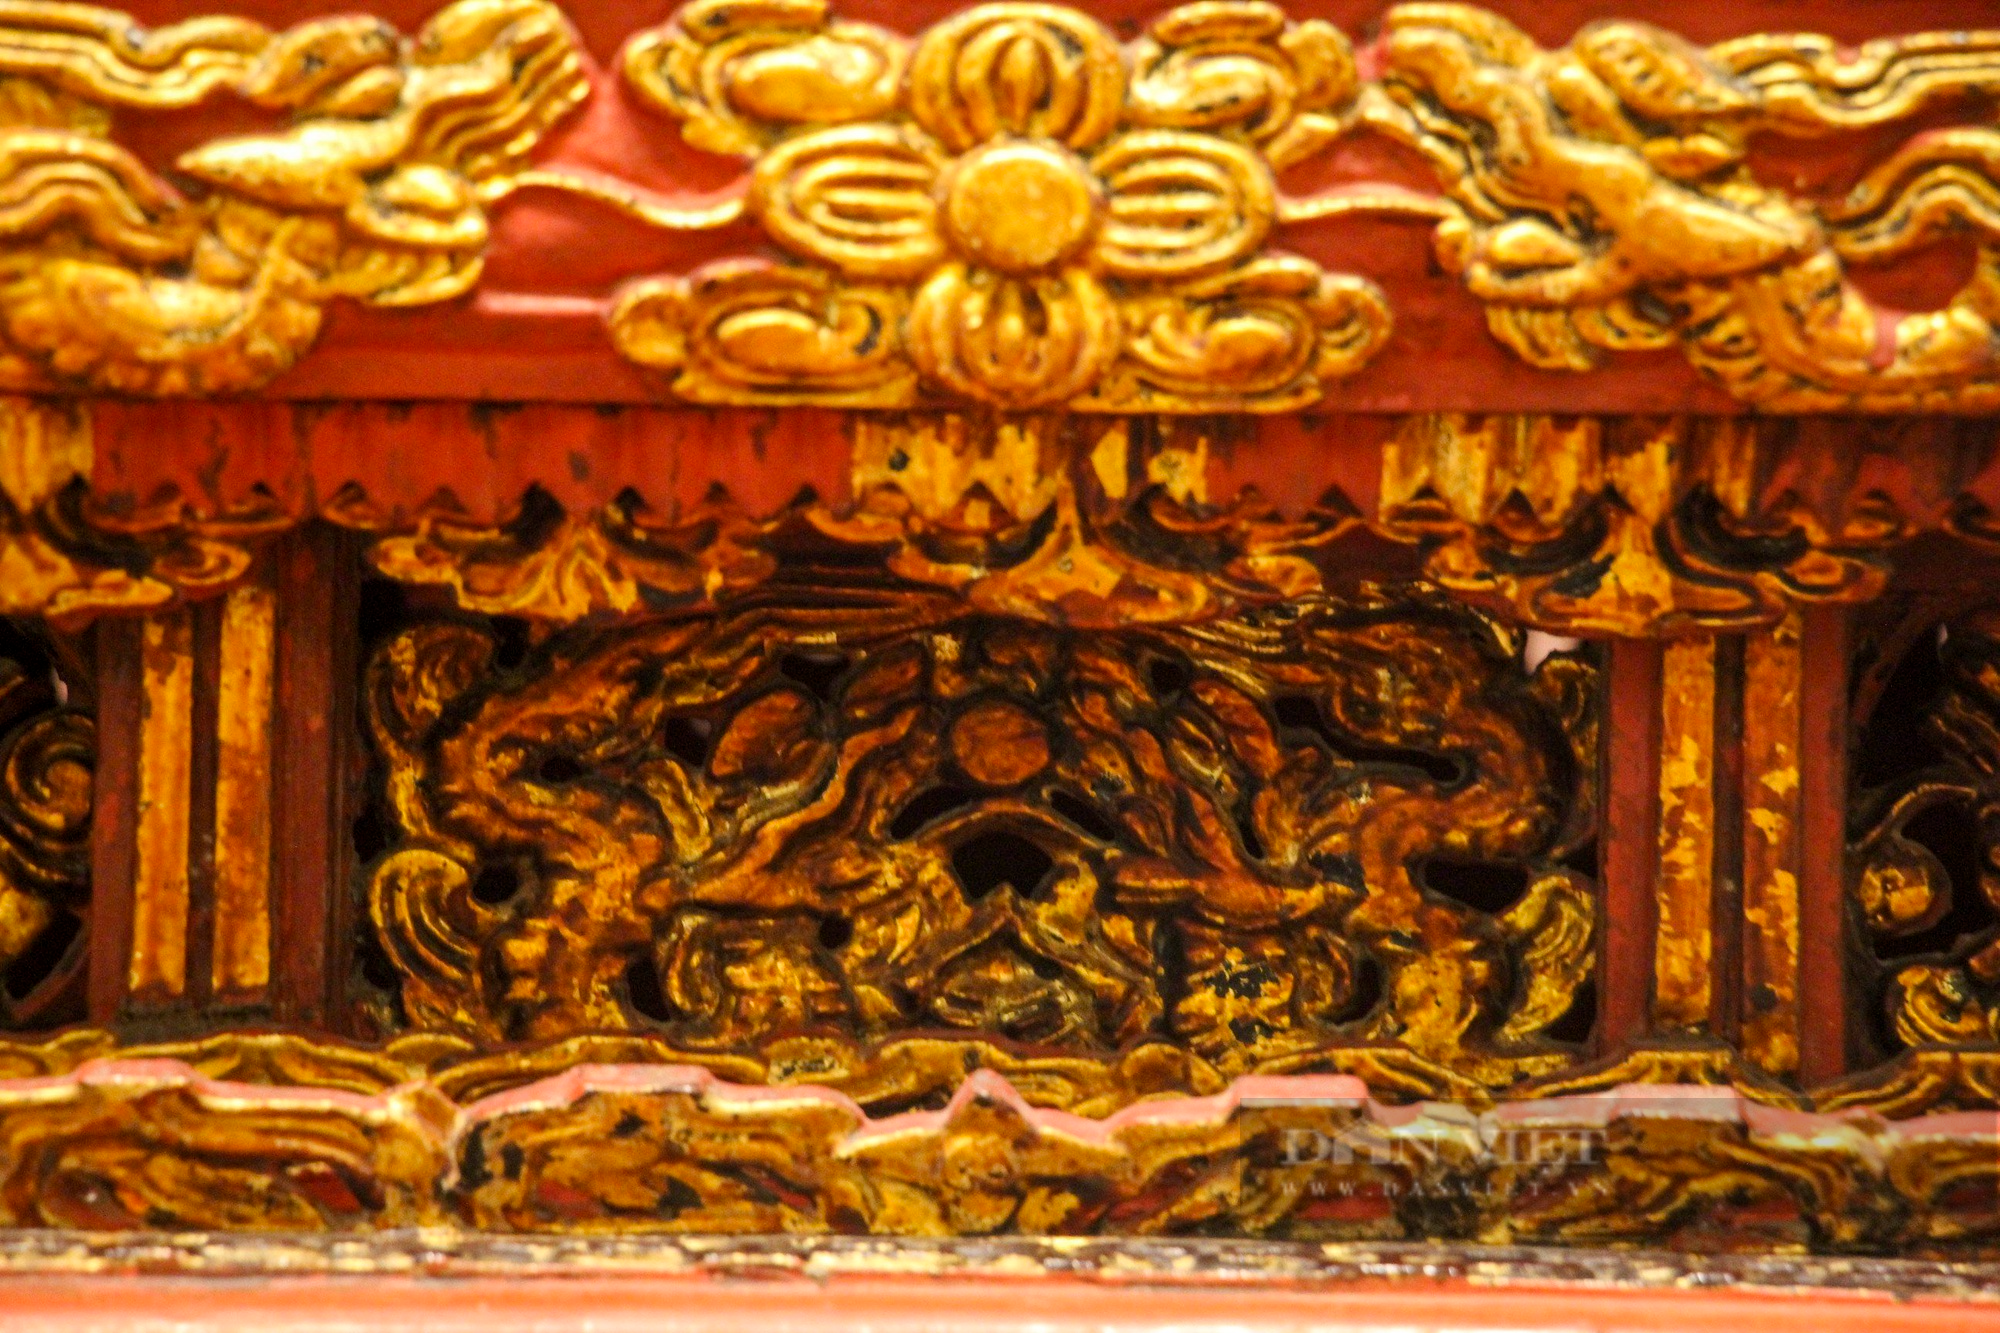 Ngai thờ sơn son thếp vàng 300 tuổi ở Thái Bình được công nhận là bảo vật quốc gia - Ảnh 8.